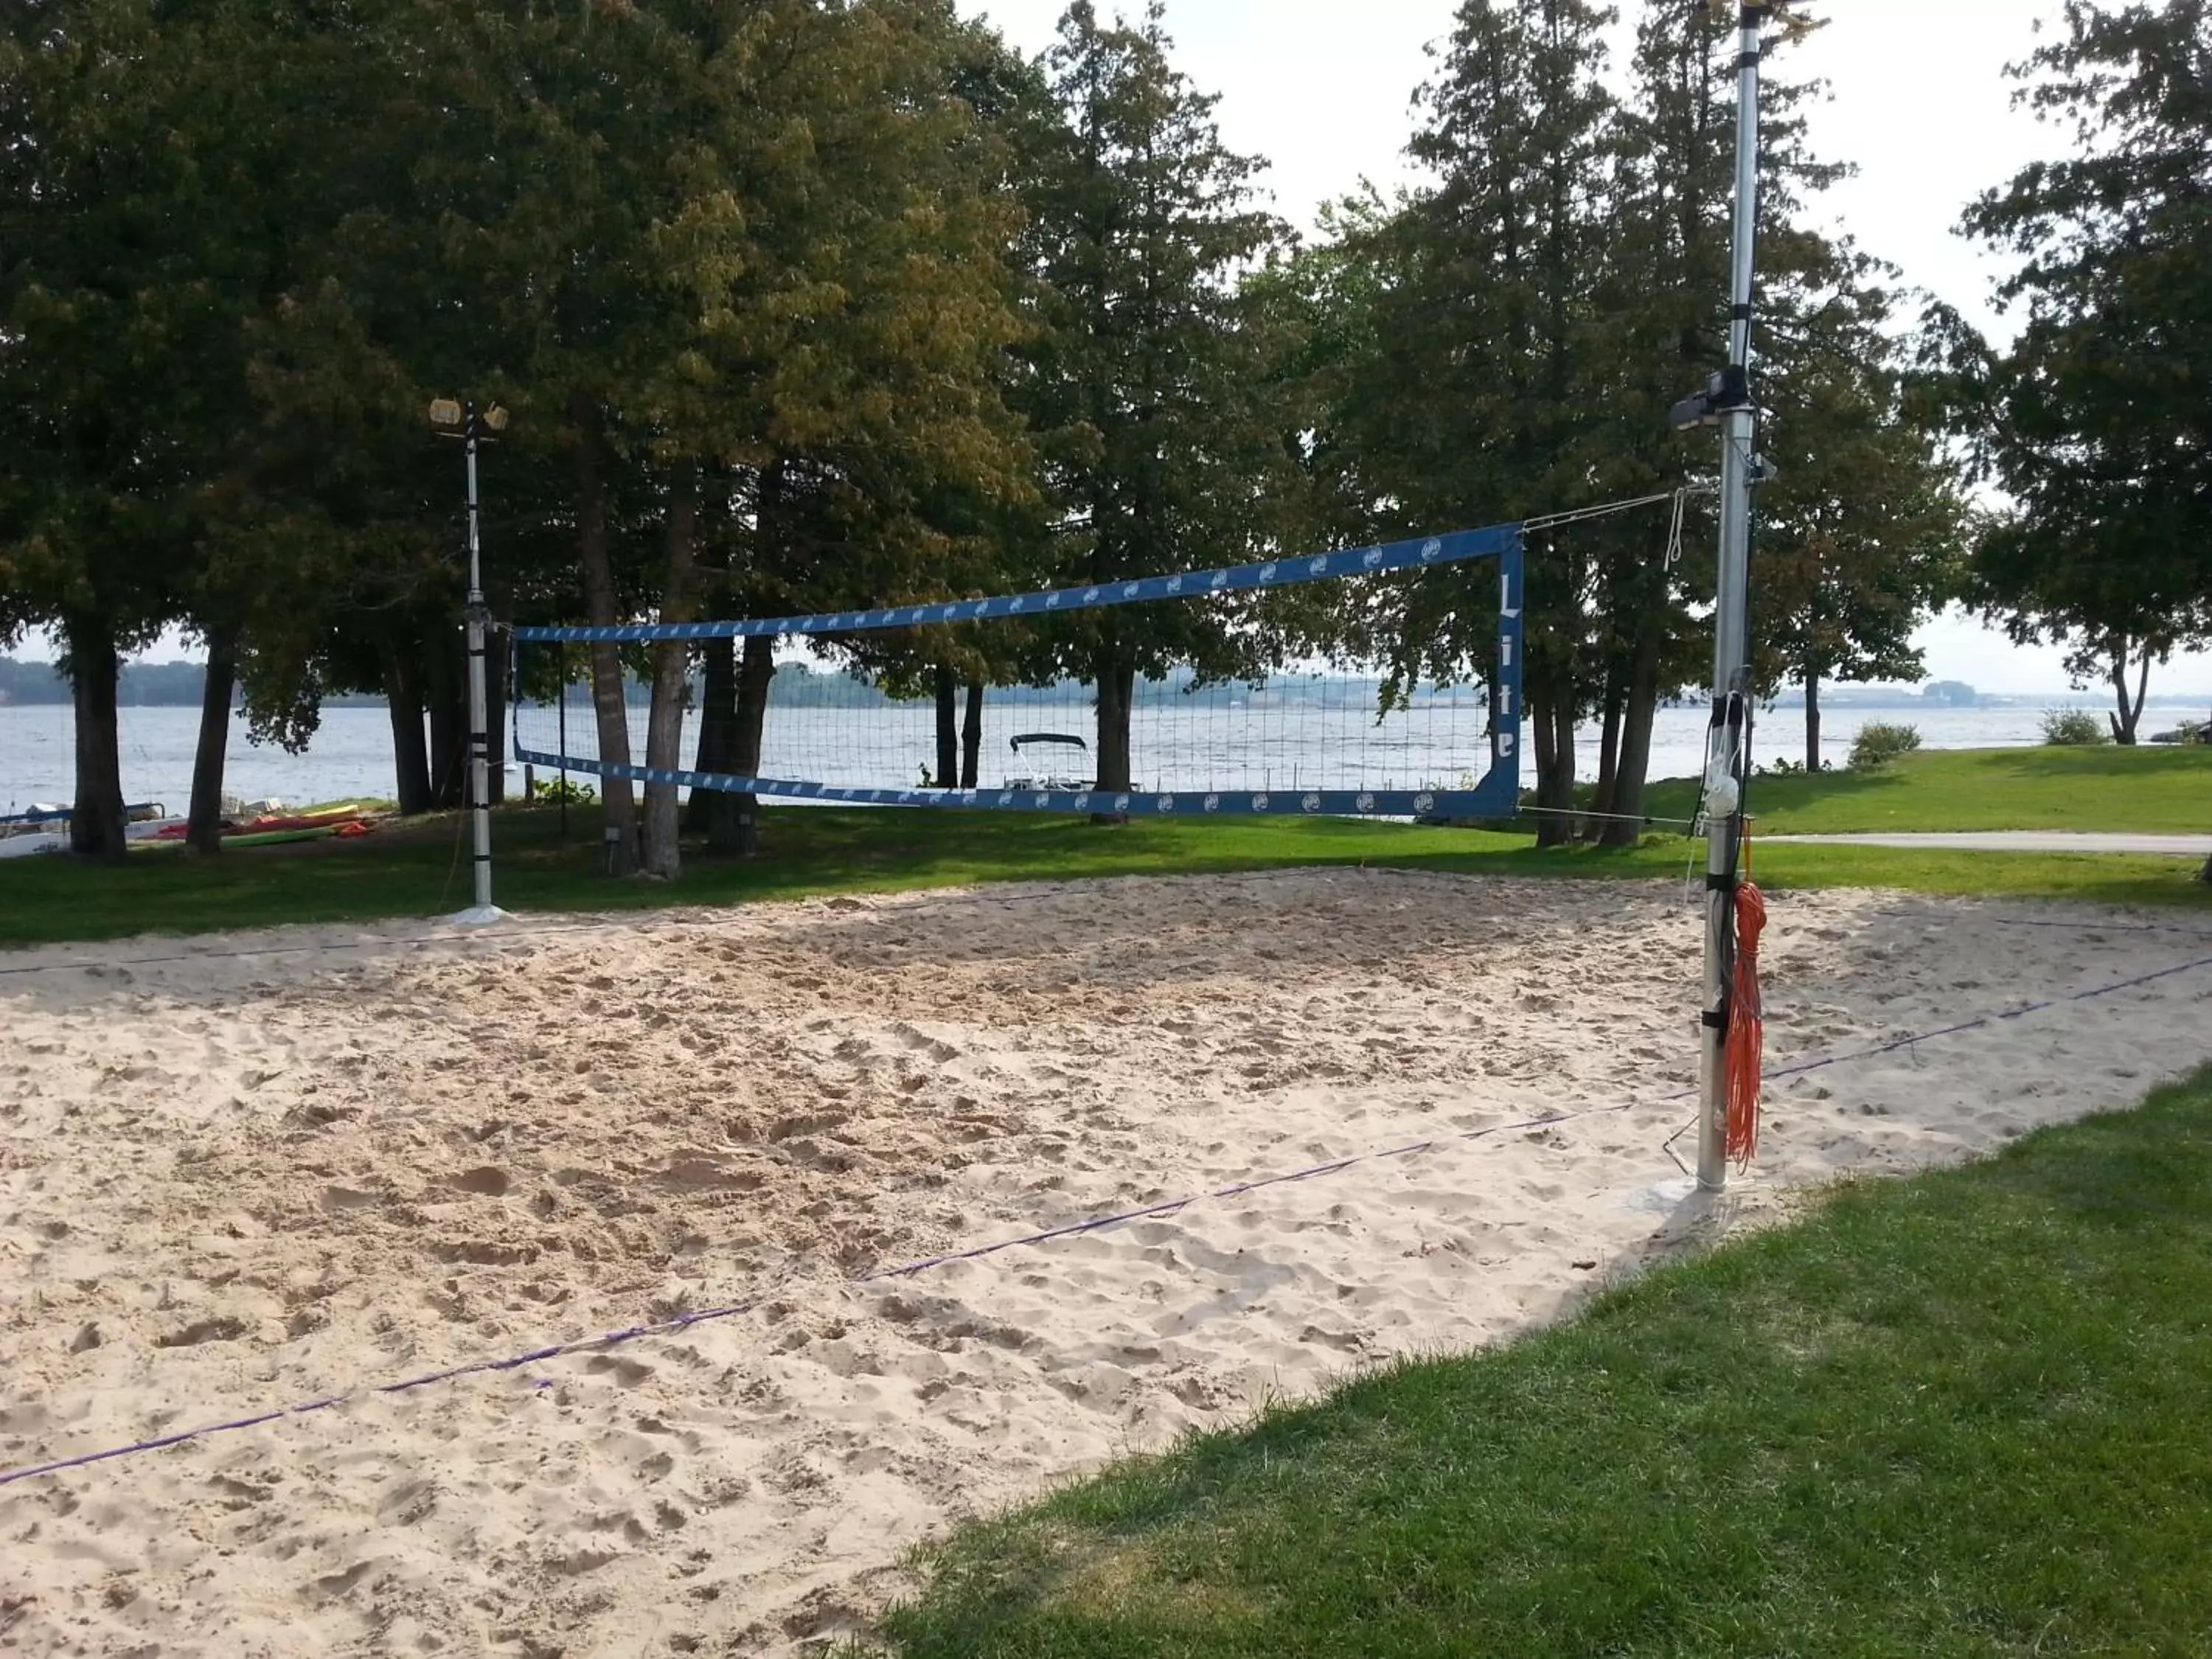 Children play ground, Other Activities in Beach Harbor Resort